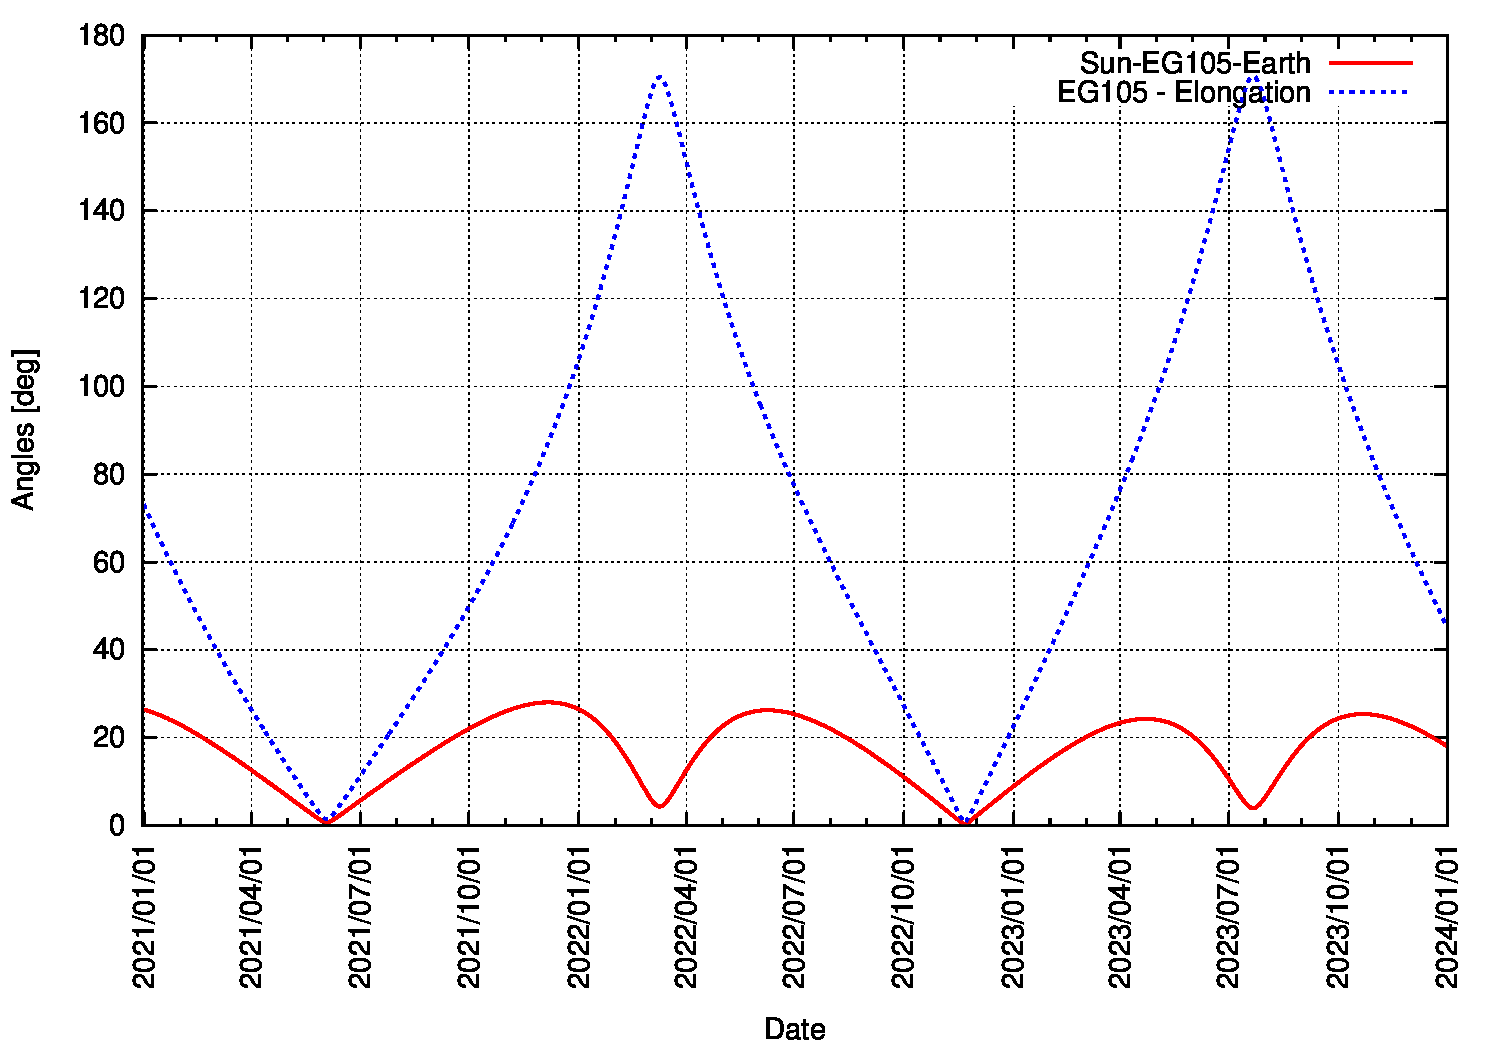 Elongation von Asteroid 169549 / 2002 EG105 vom 1.1.2021 bis zum 31.12.2023